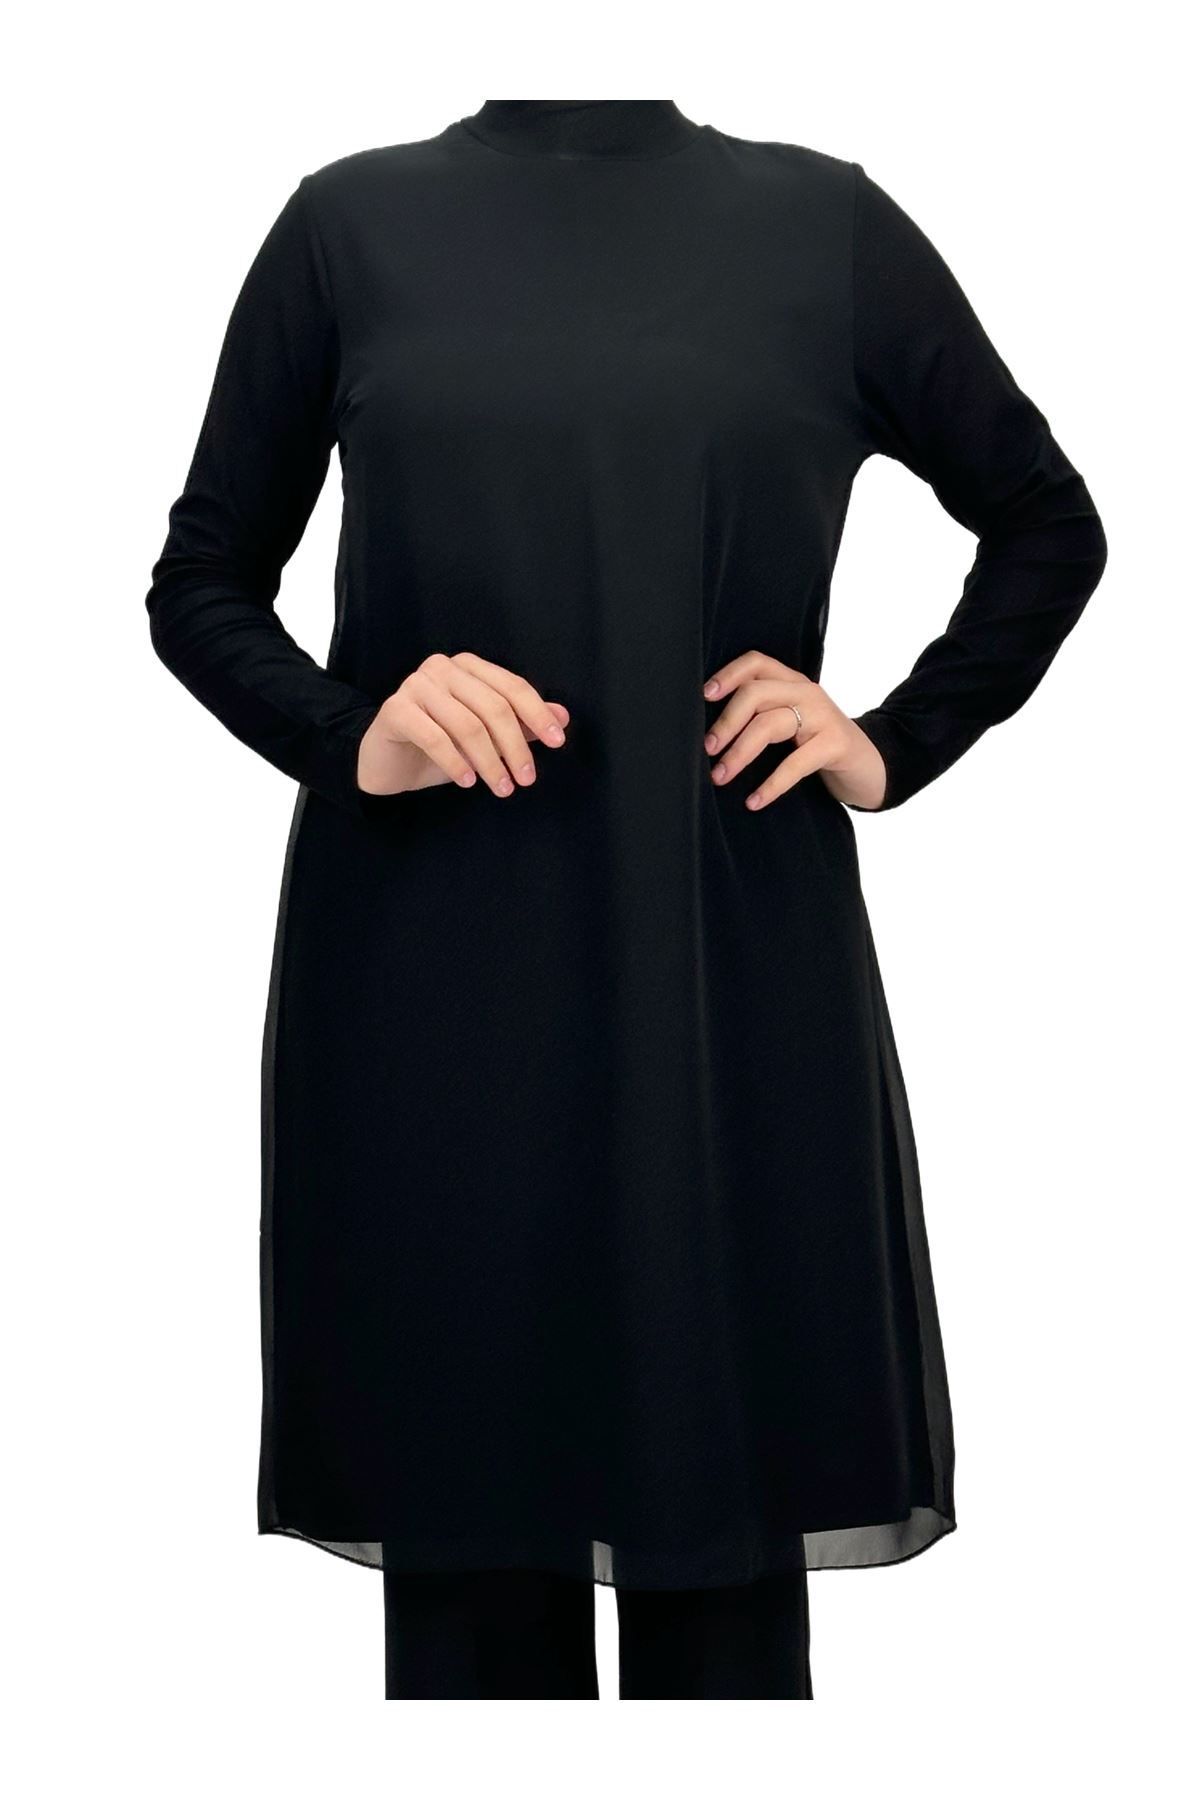 ottoman wear OTW8832 Önü Şifon Detaylı Penye Uzun Kollu İçlik Siyah